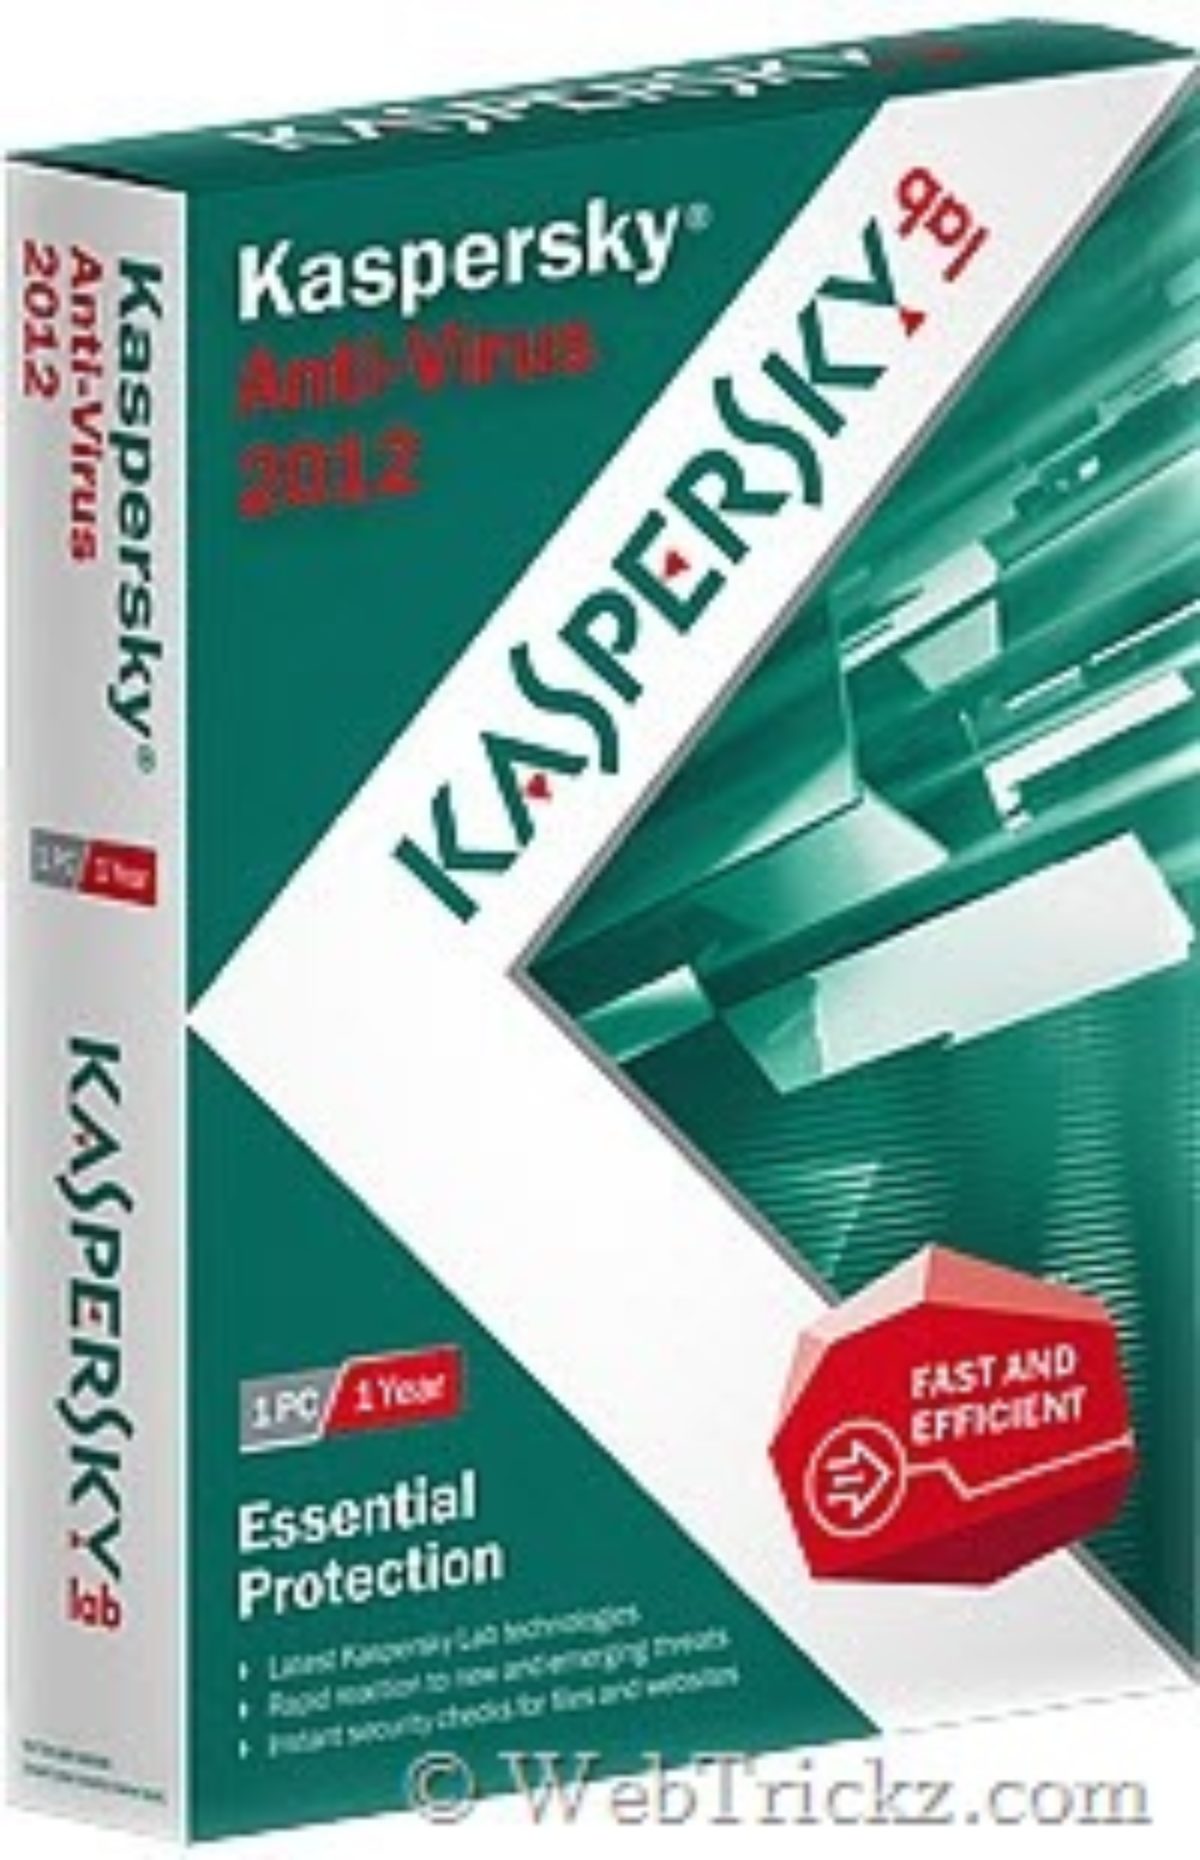 free trial antivirus download kaspersky